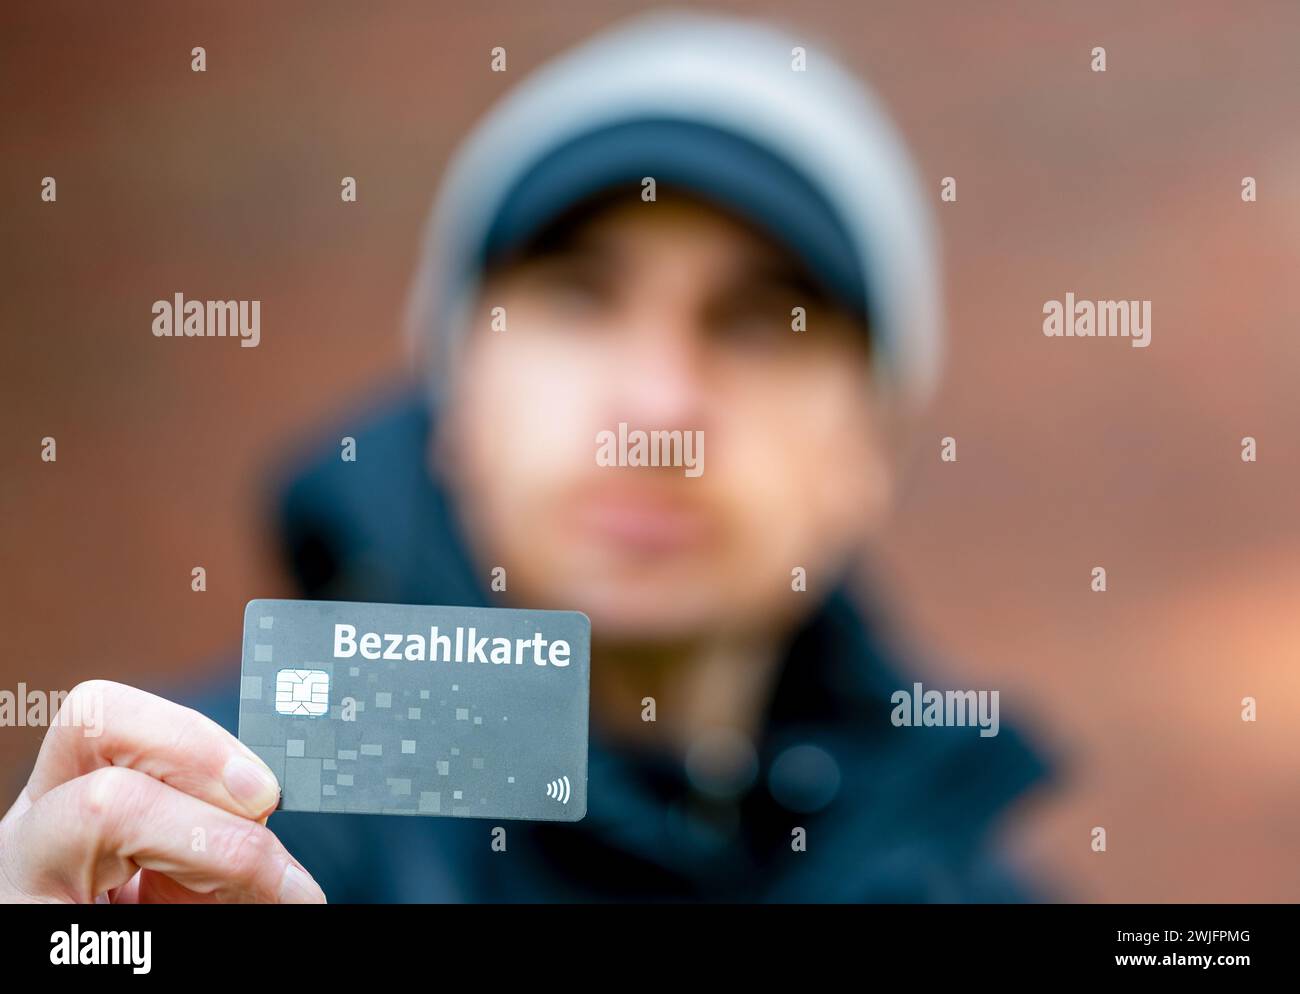 Un réfugié avec une carte de paiement (Bezahlkarte) en Allemagne. Symbole de la nouvelle carte de paiement pour les réfugiés en Allemagne. Banque D'Images